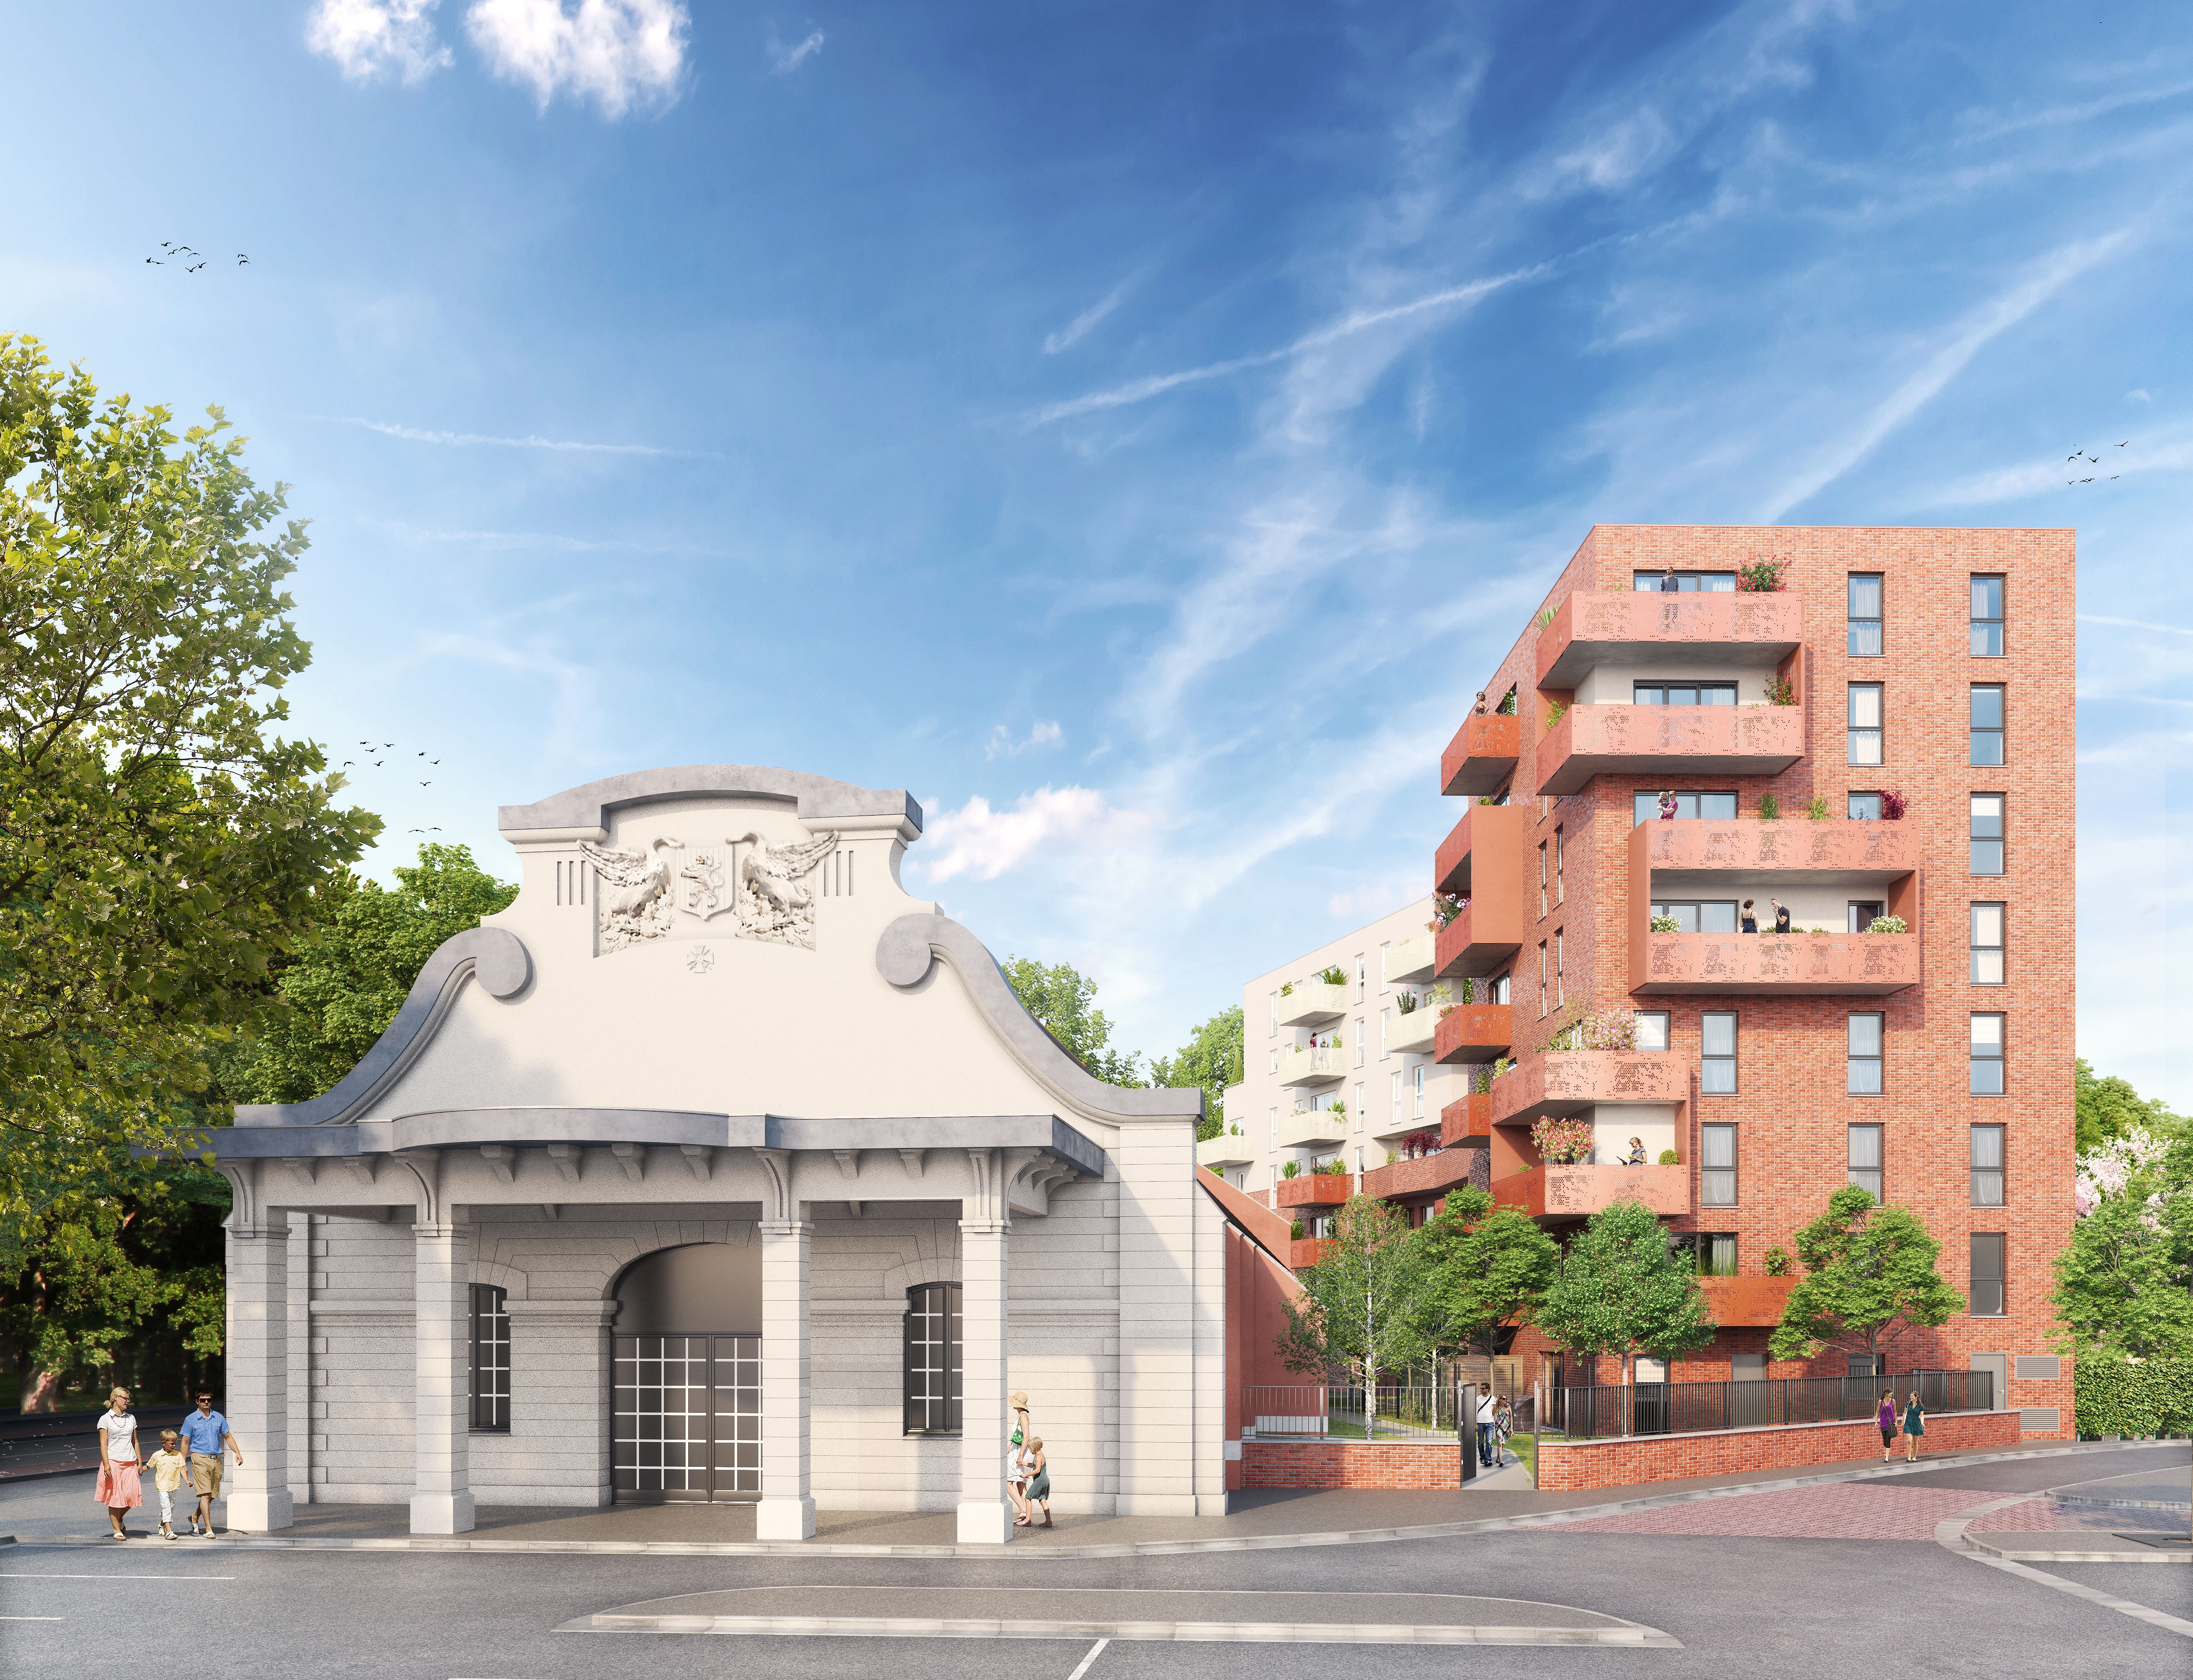 Investissement appartement neuf Valenciennes Prêt à taux zéro (PTZ+) livrable 2022 quartier Proche Centre Ville 